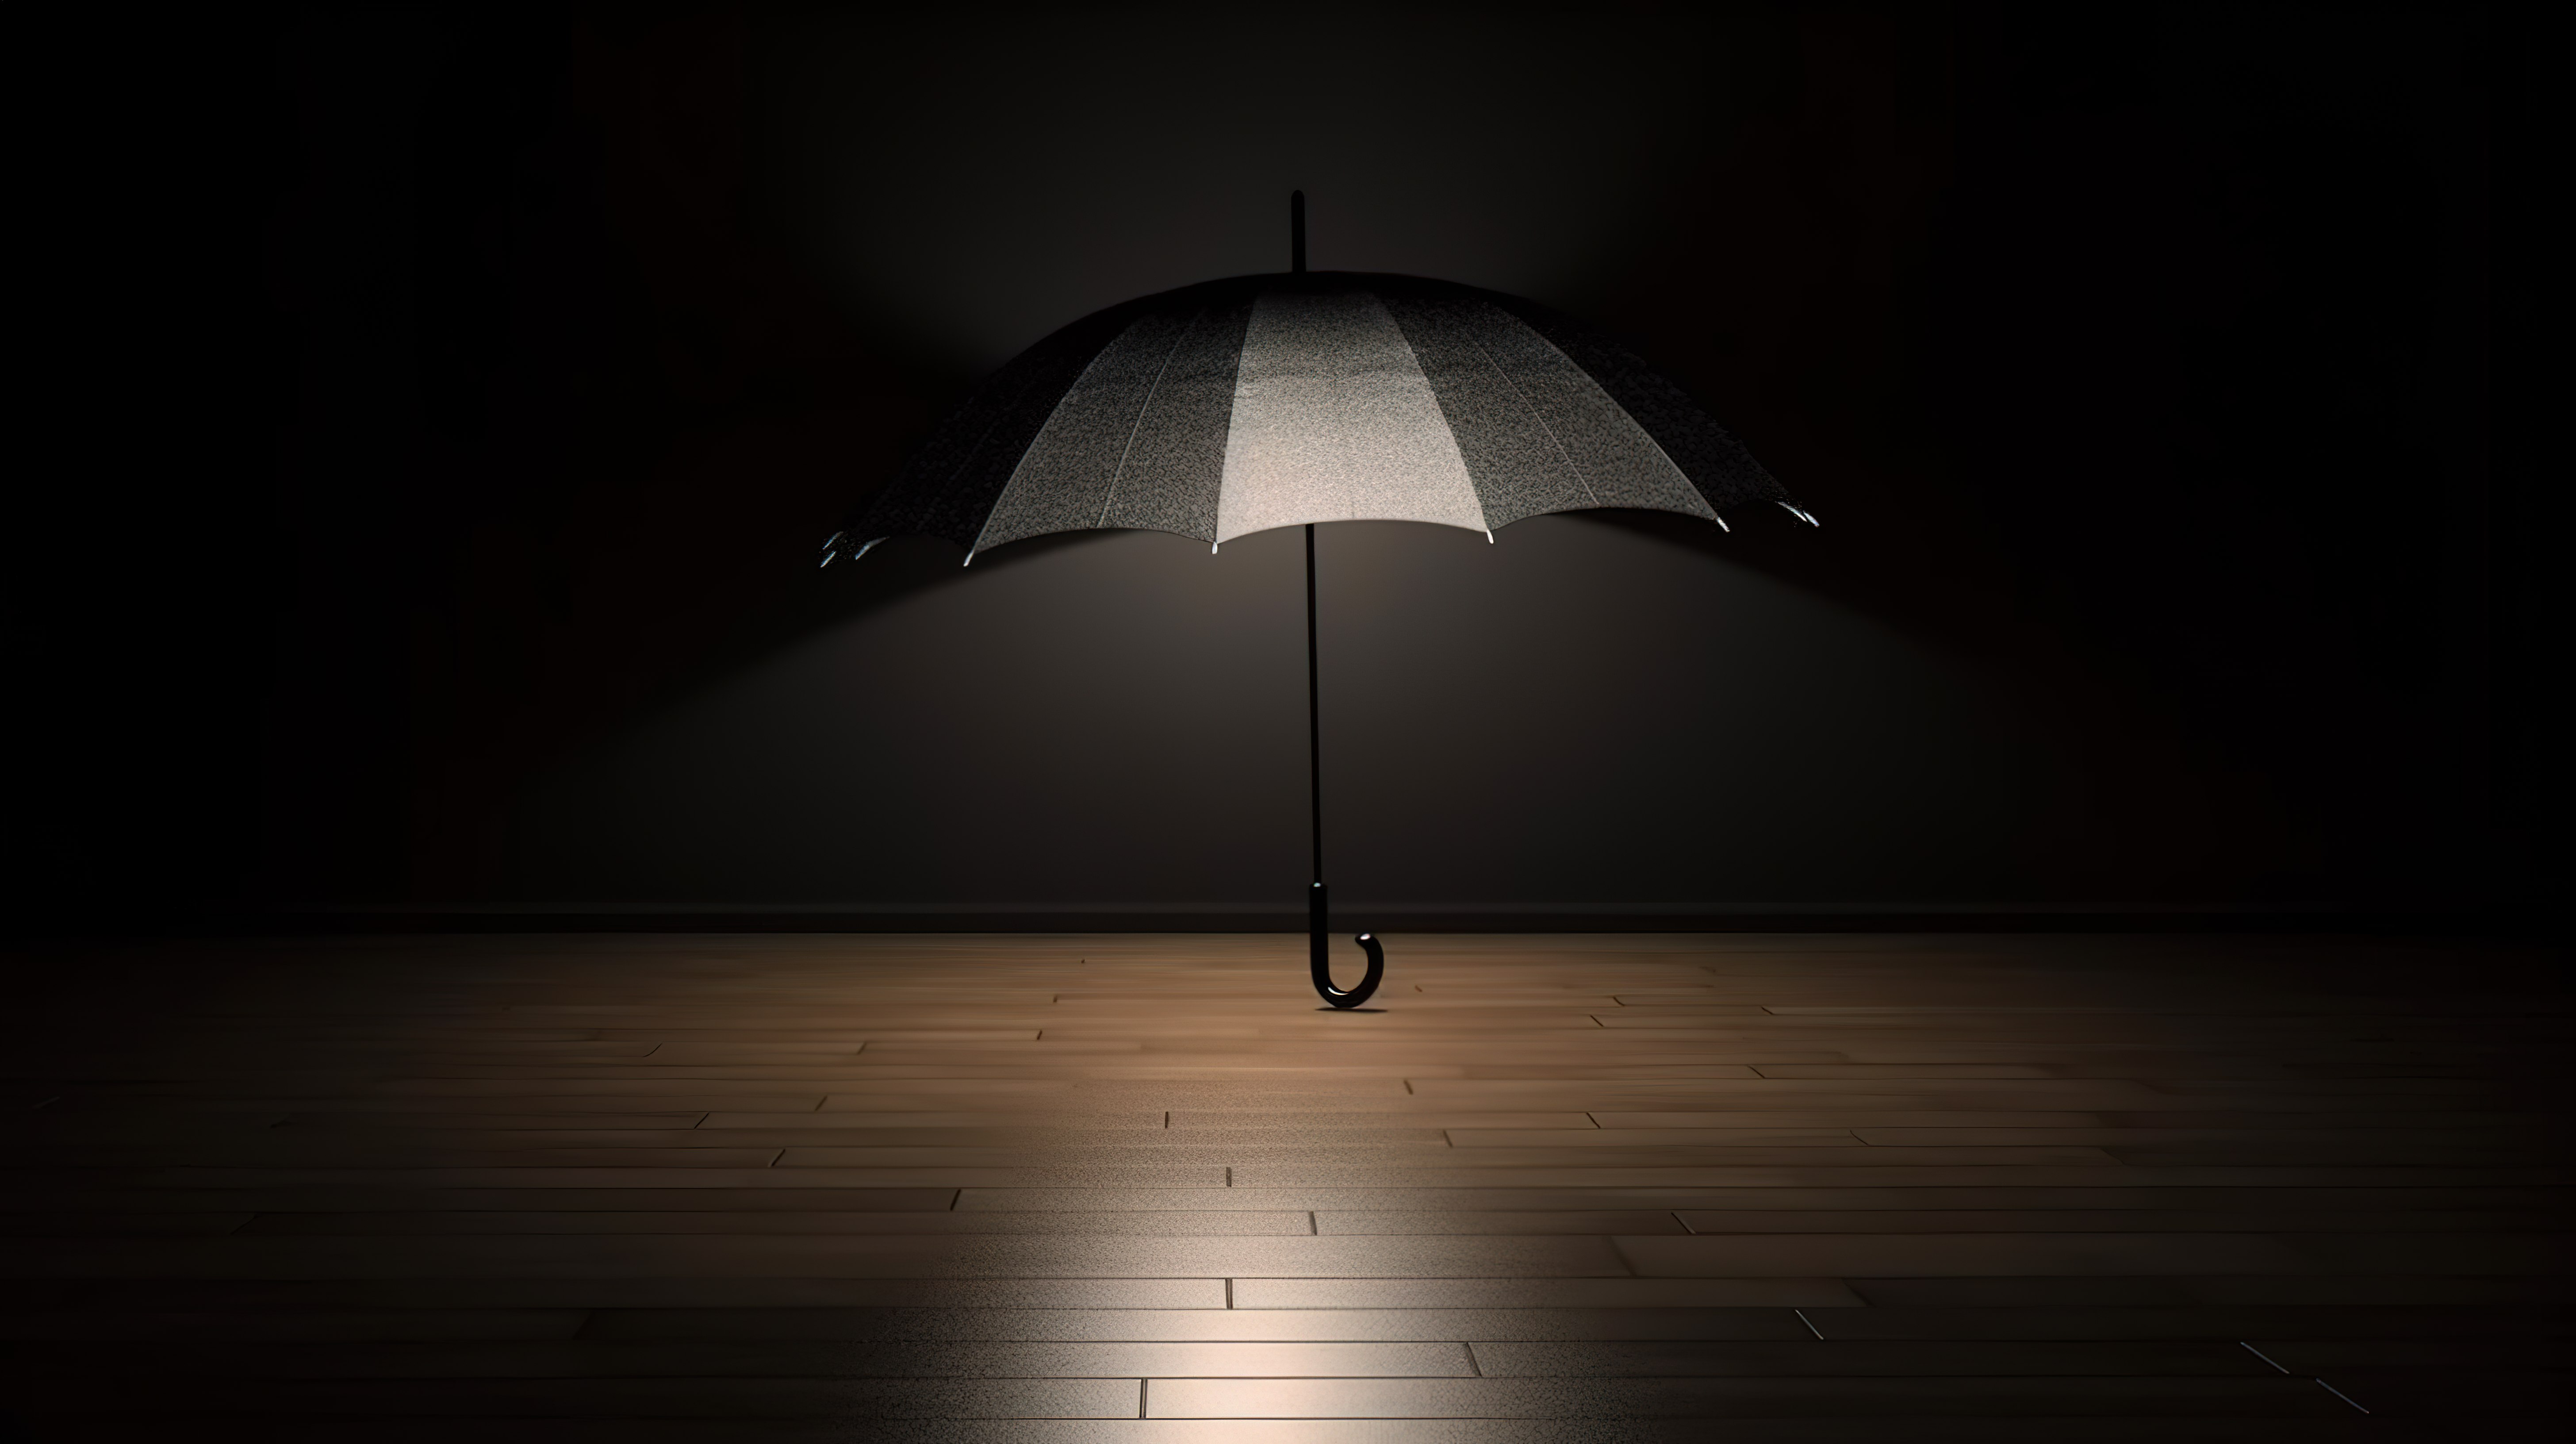 黑暗背景下雨伞组件的照明和模糊度 3D 插图图片